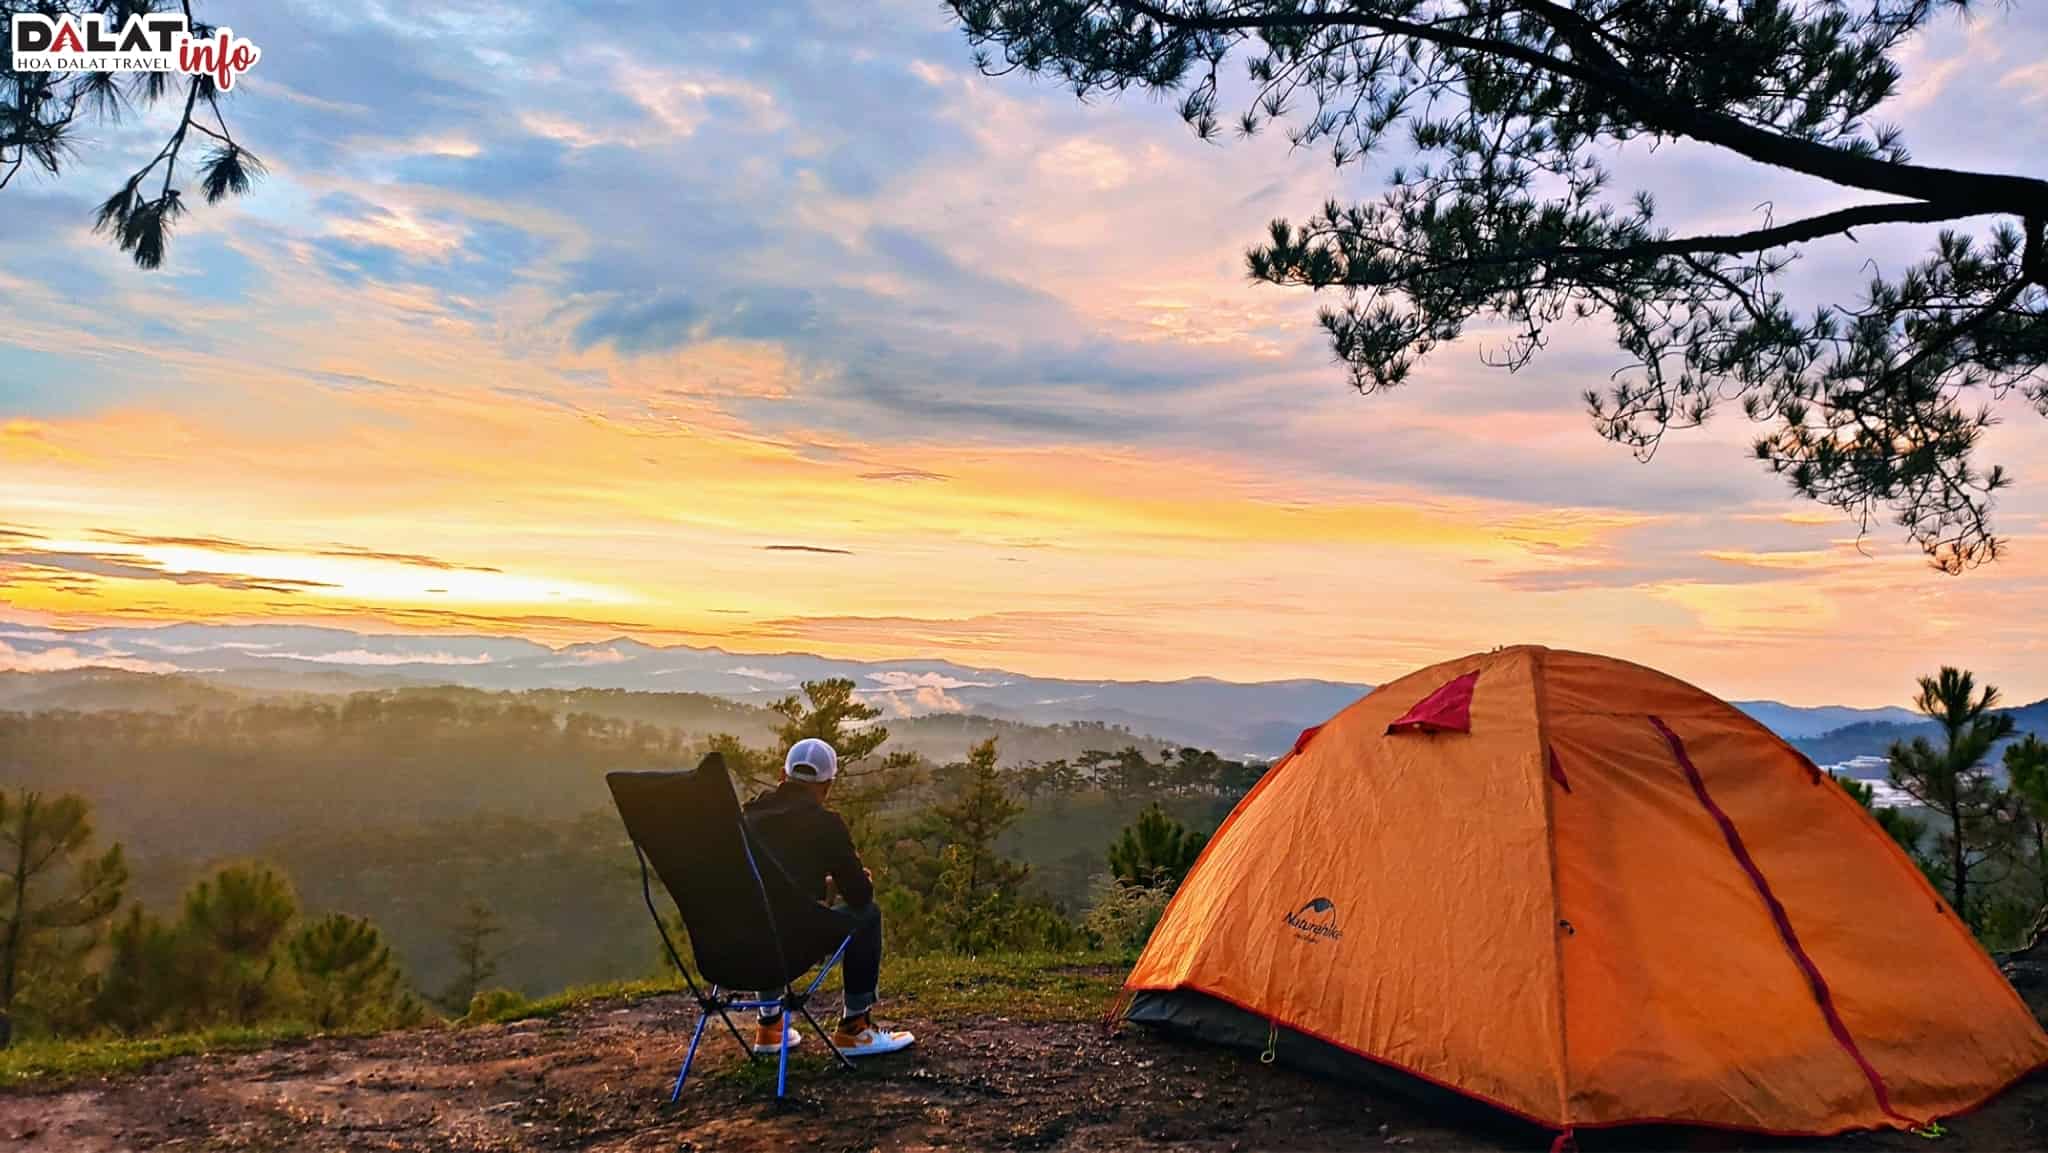 Cắm trại là một trải nghiệm tuyệt vời ở đồi